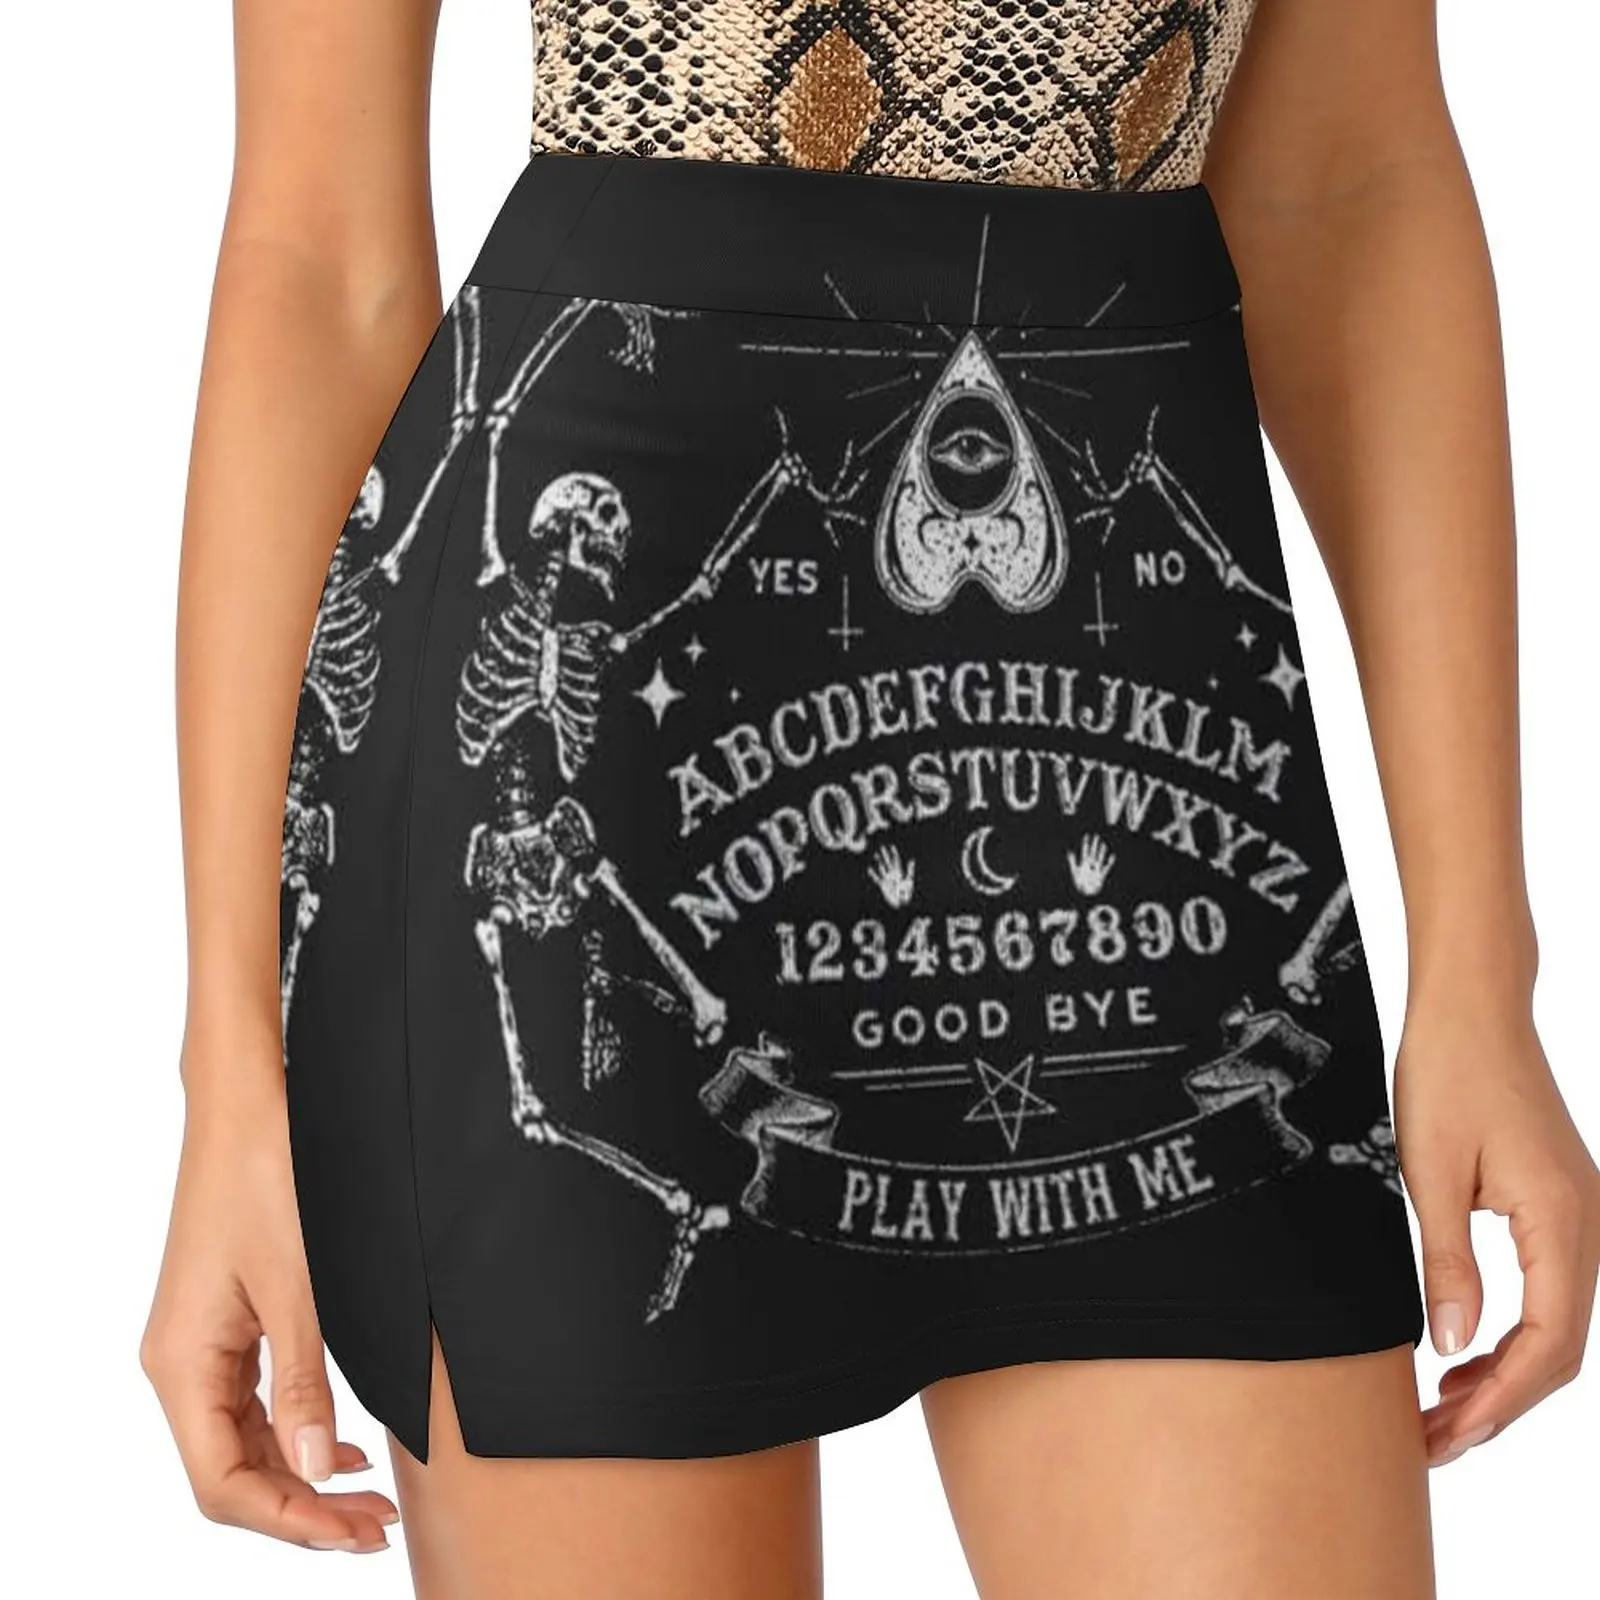 

Ouija, юбка-шорты, женская одежда, микро мини-юбка, экстремальная